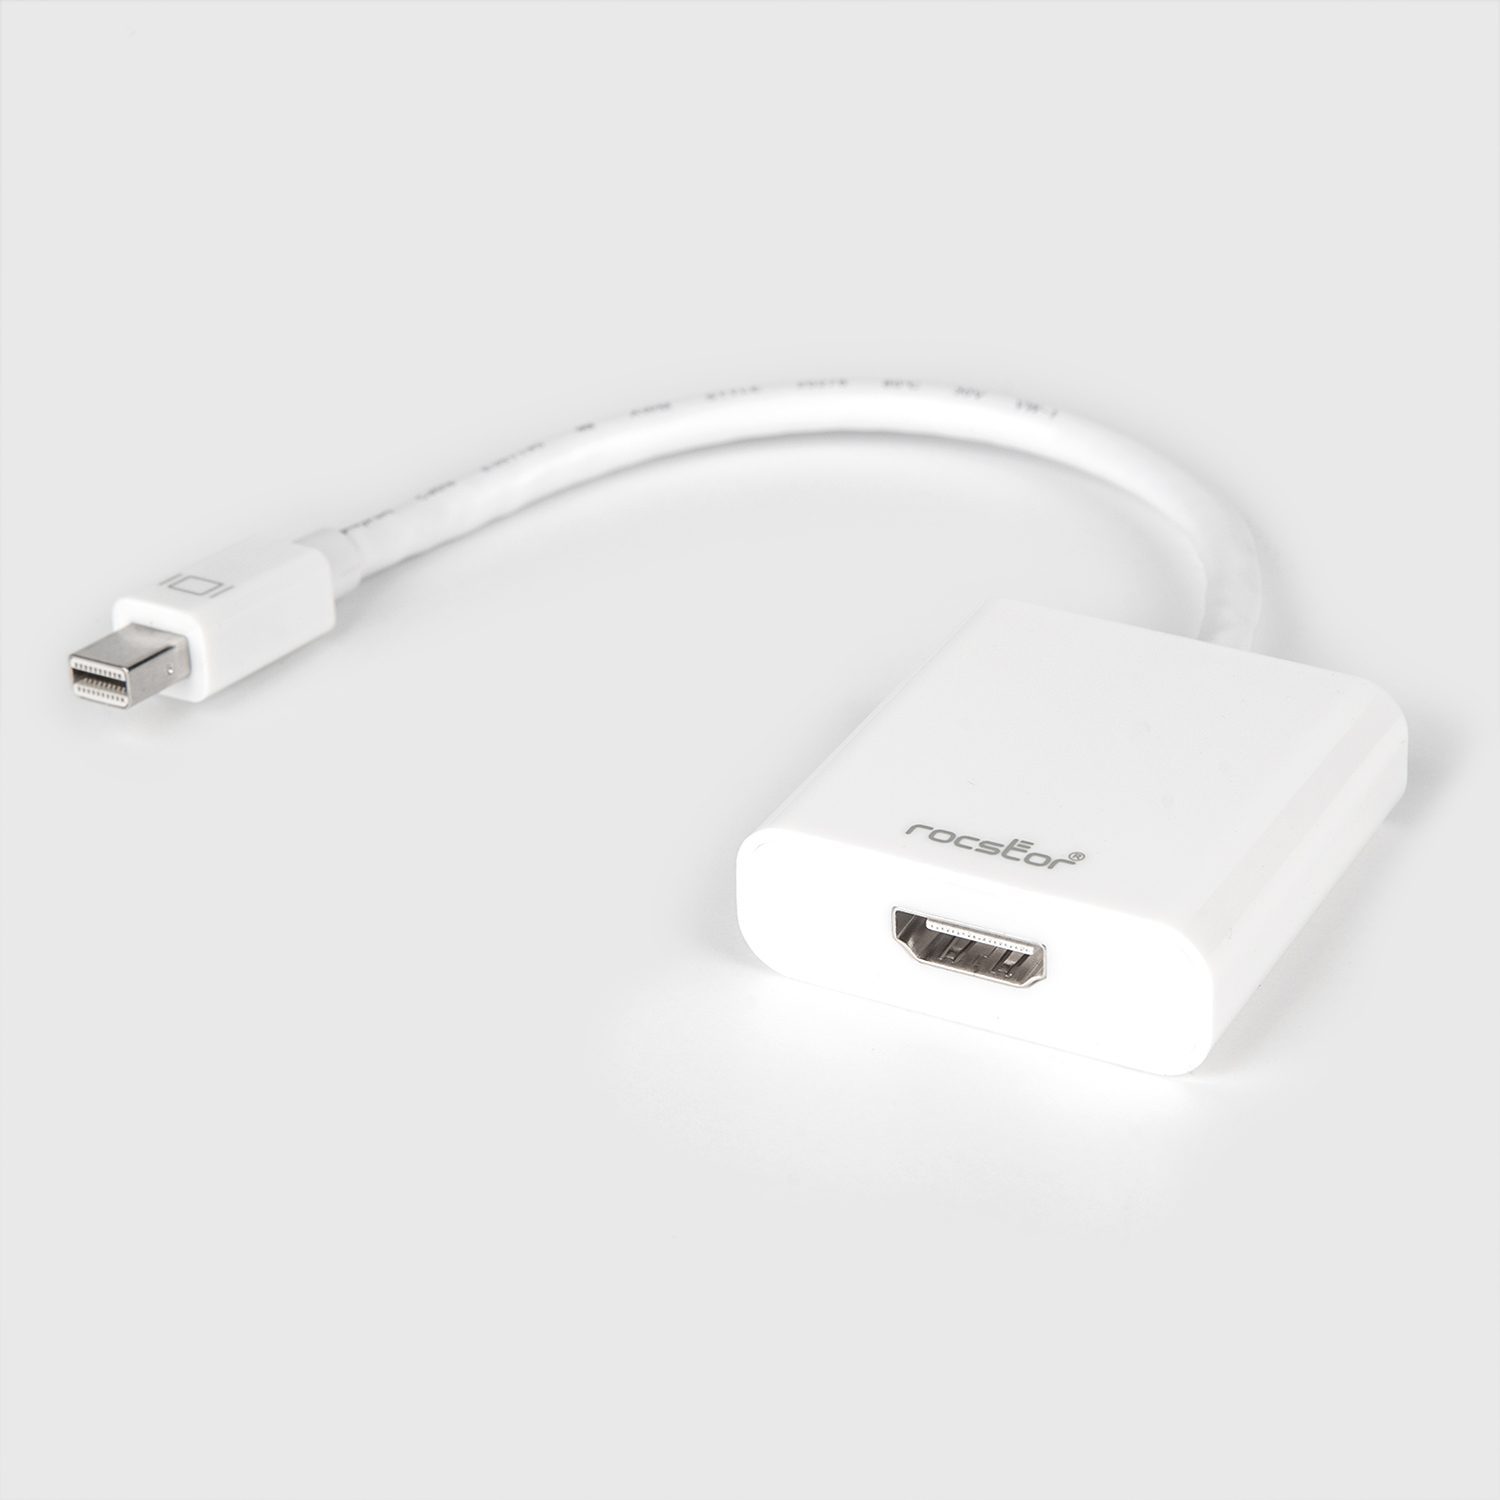 Cable Adaptador Mini Dp A Hdmi Para Mac Macbook Pro